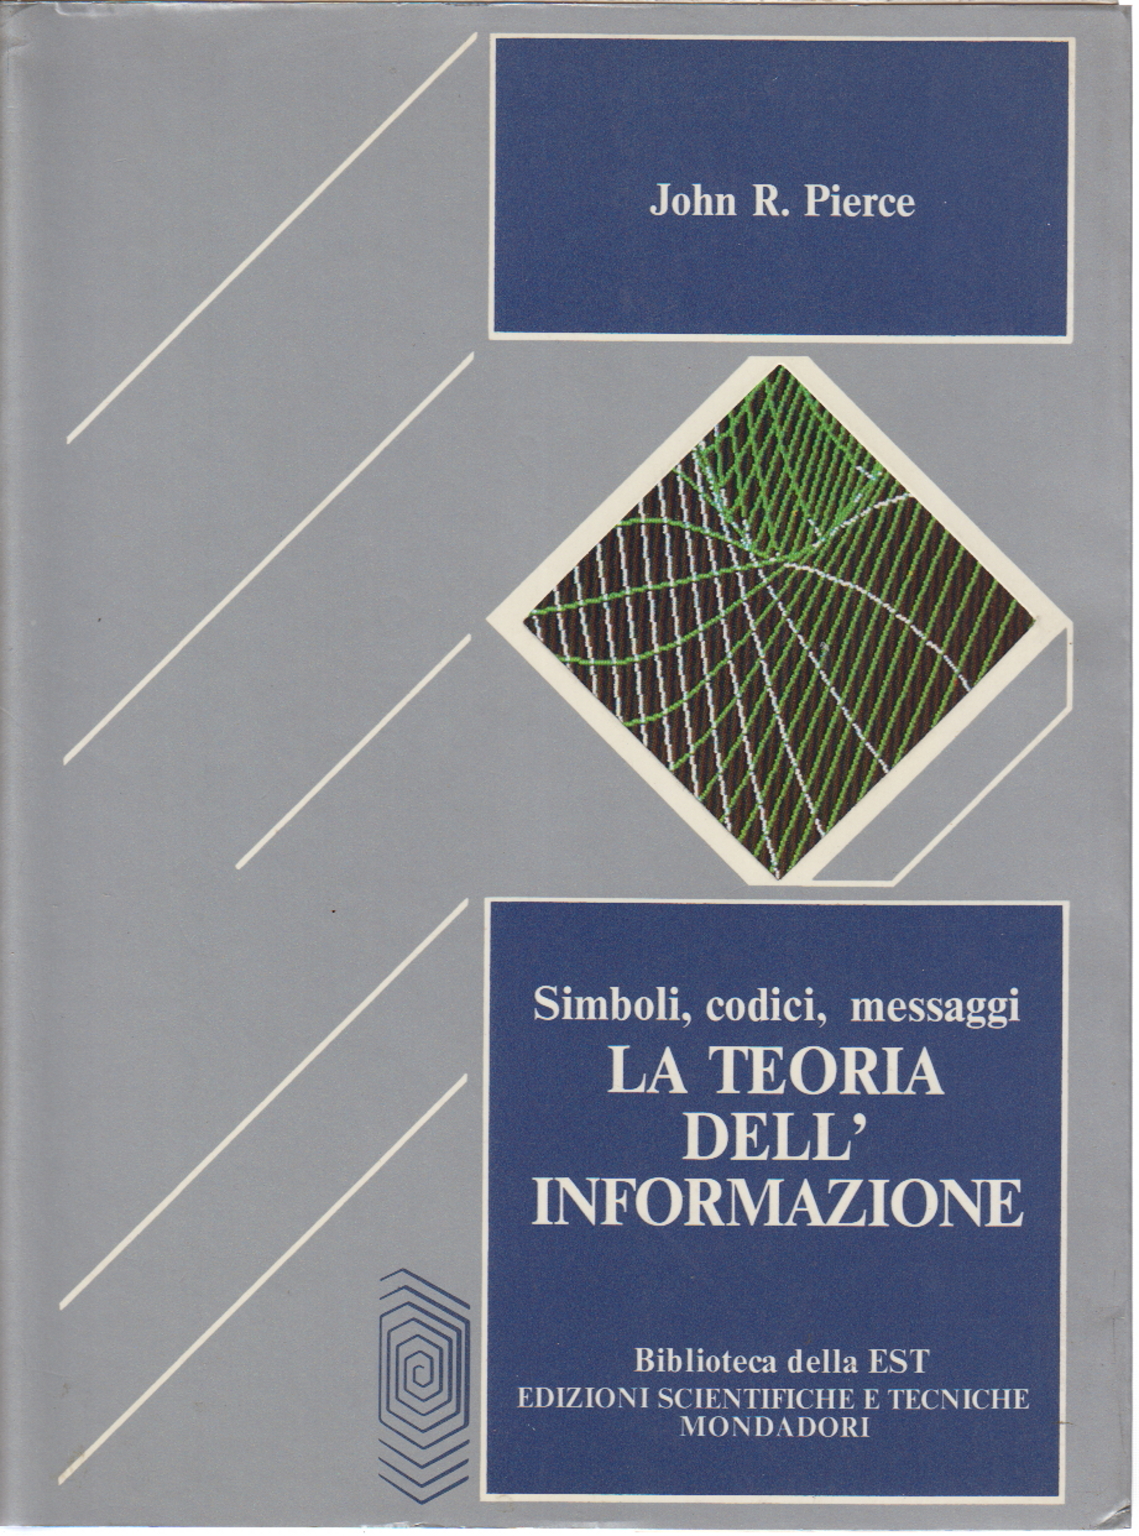 La teoria dell'informazione, John R. Pierce